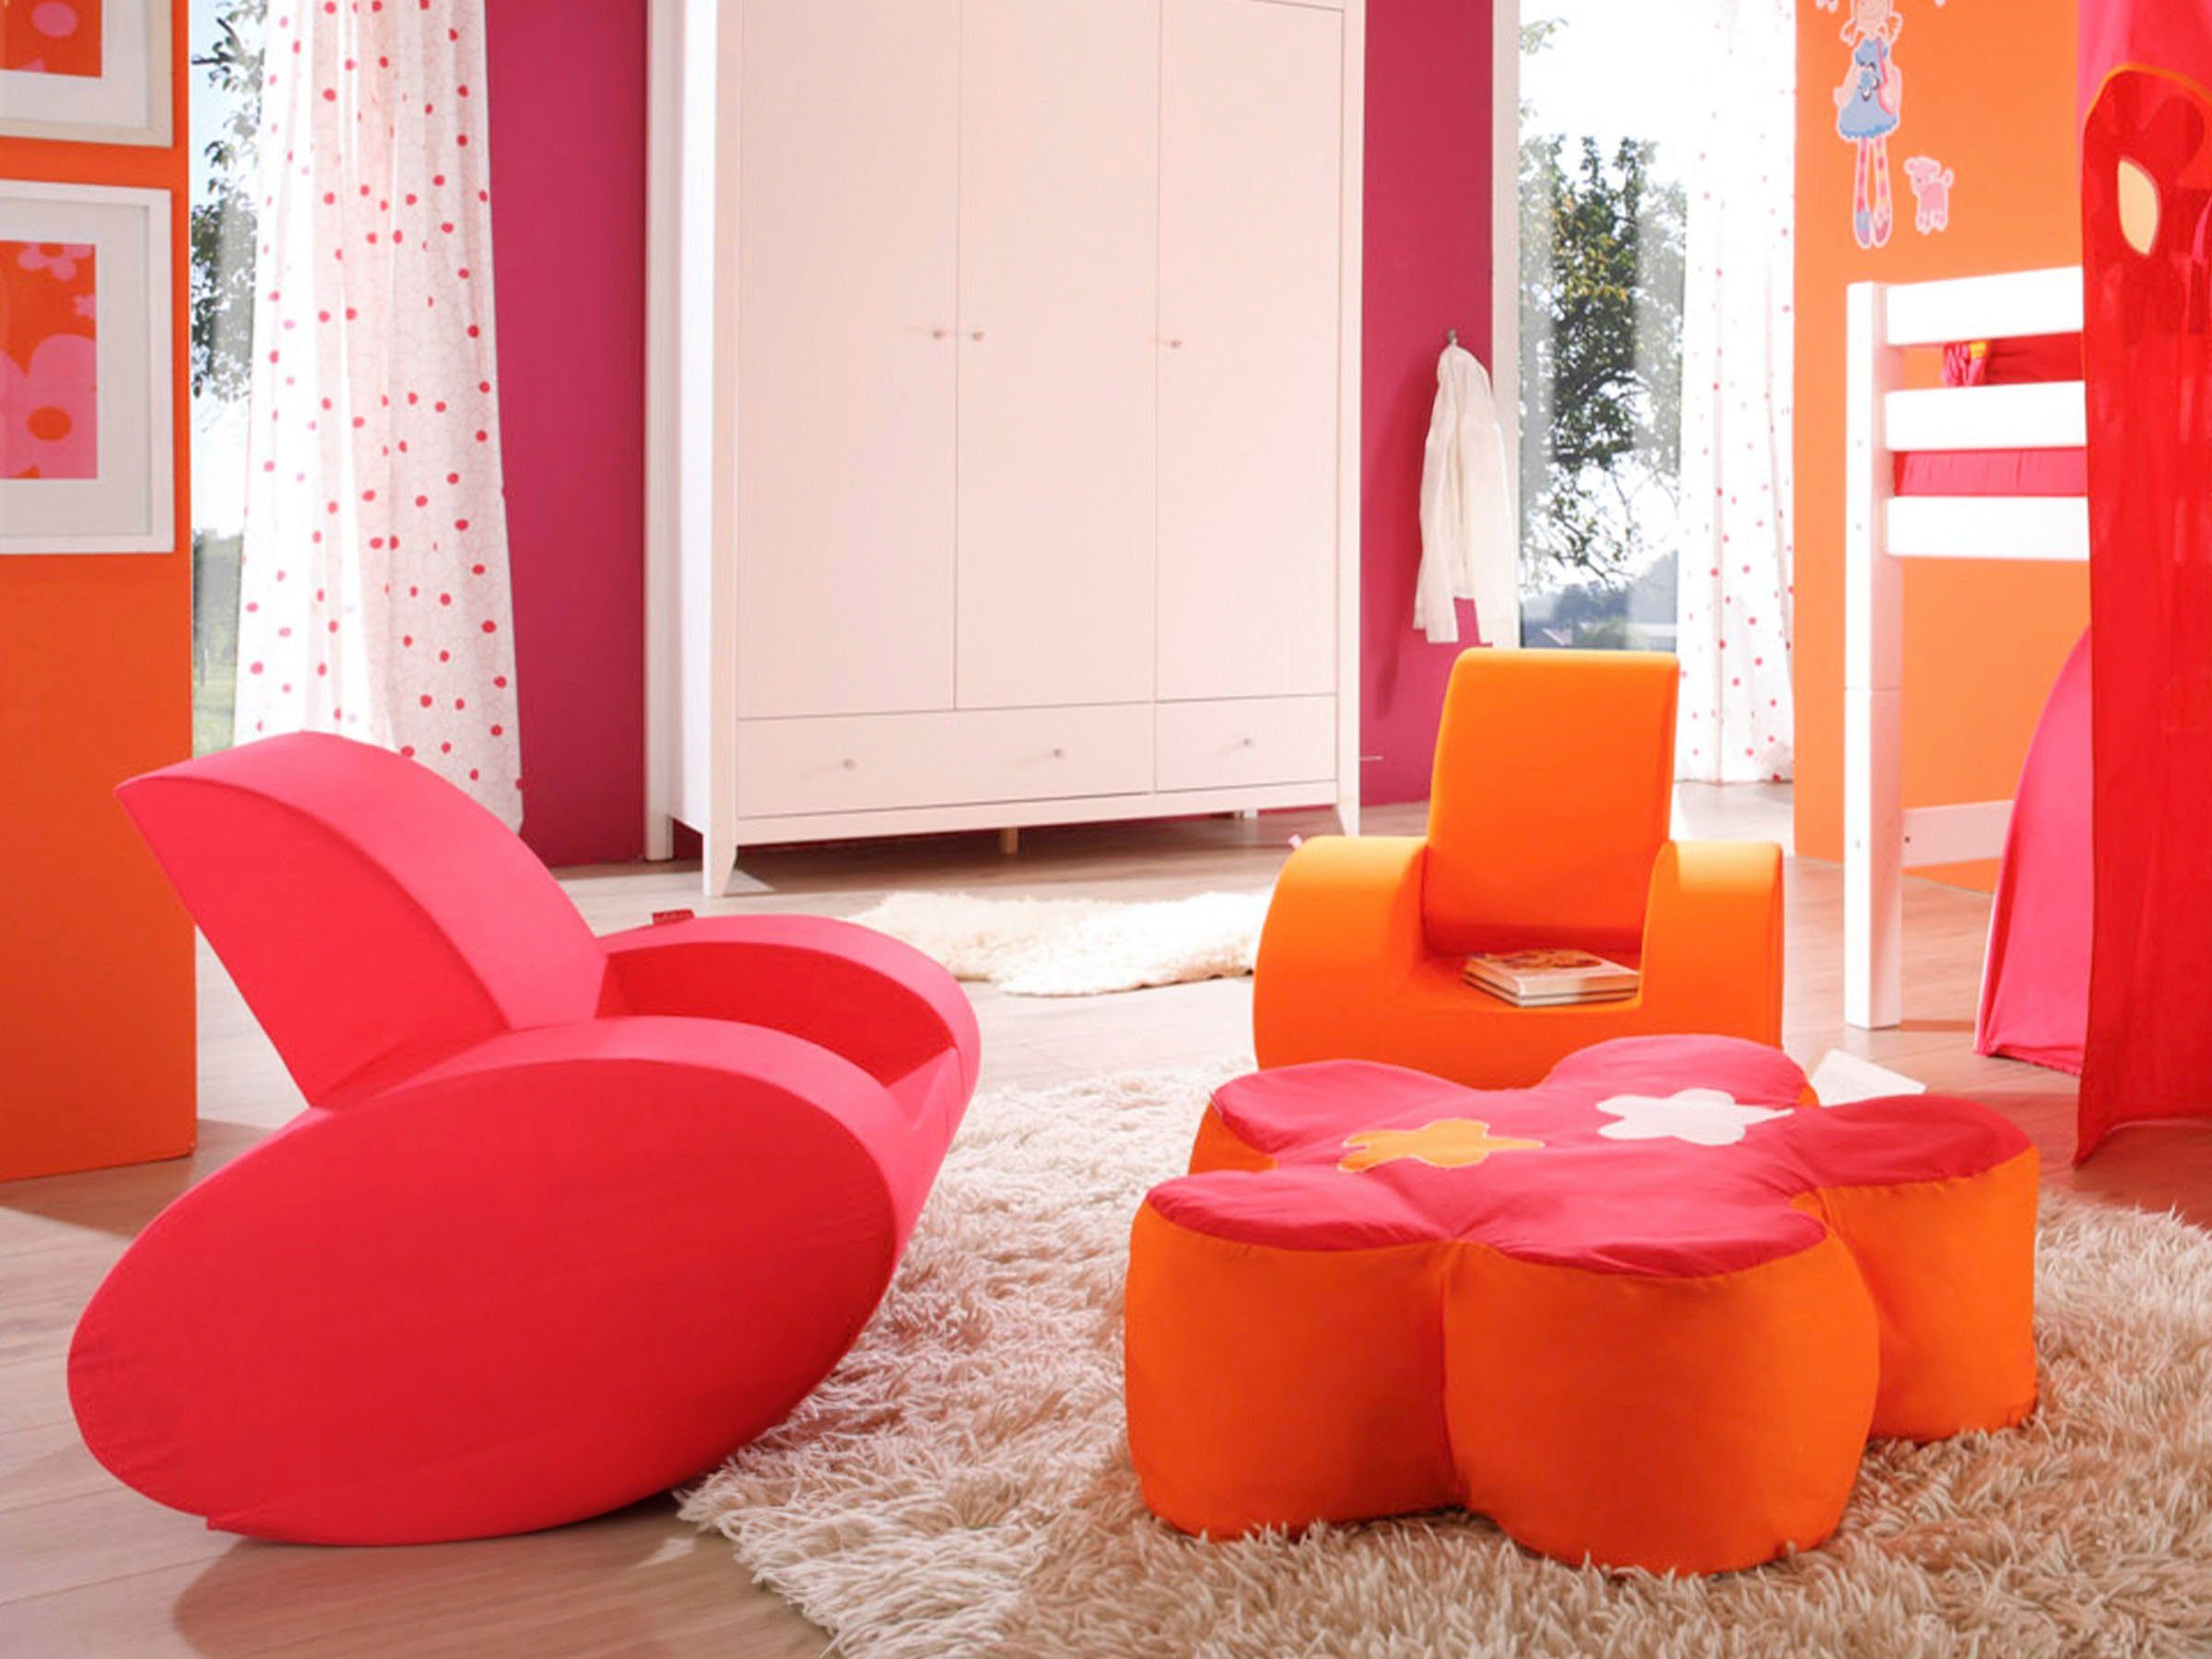 Hoppekids Sessel, Kindersessel Schaukelstuhl in 2 Farben pink